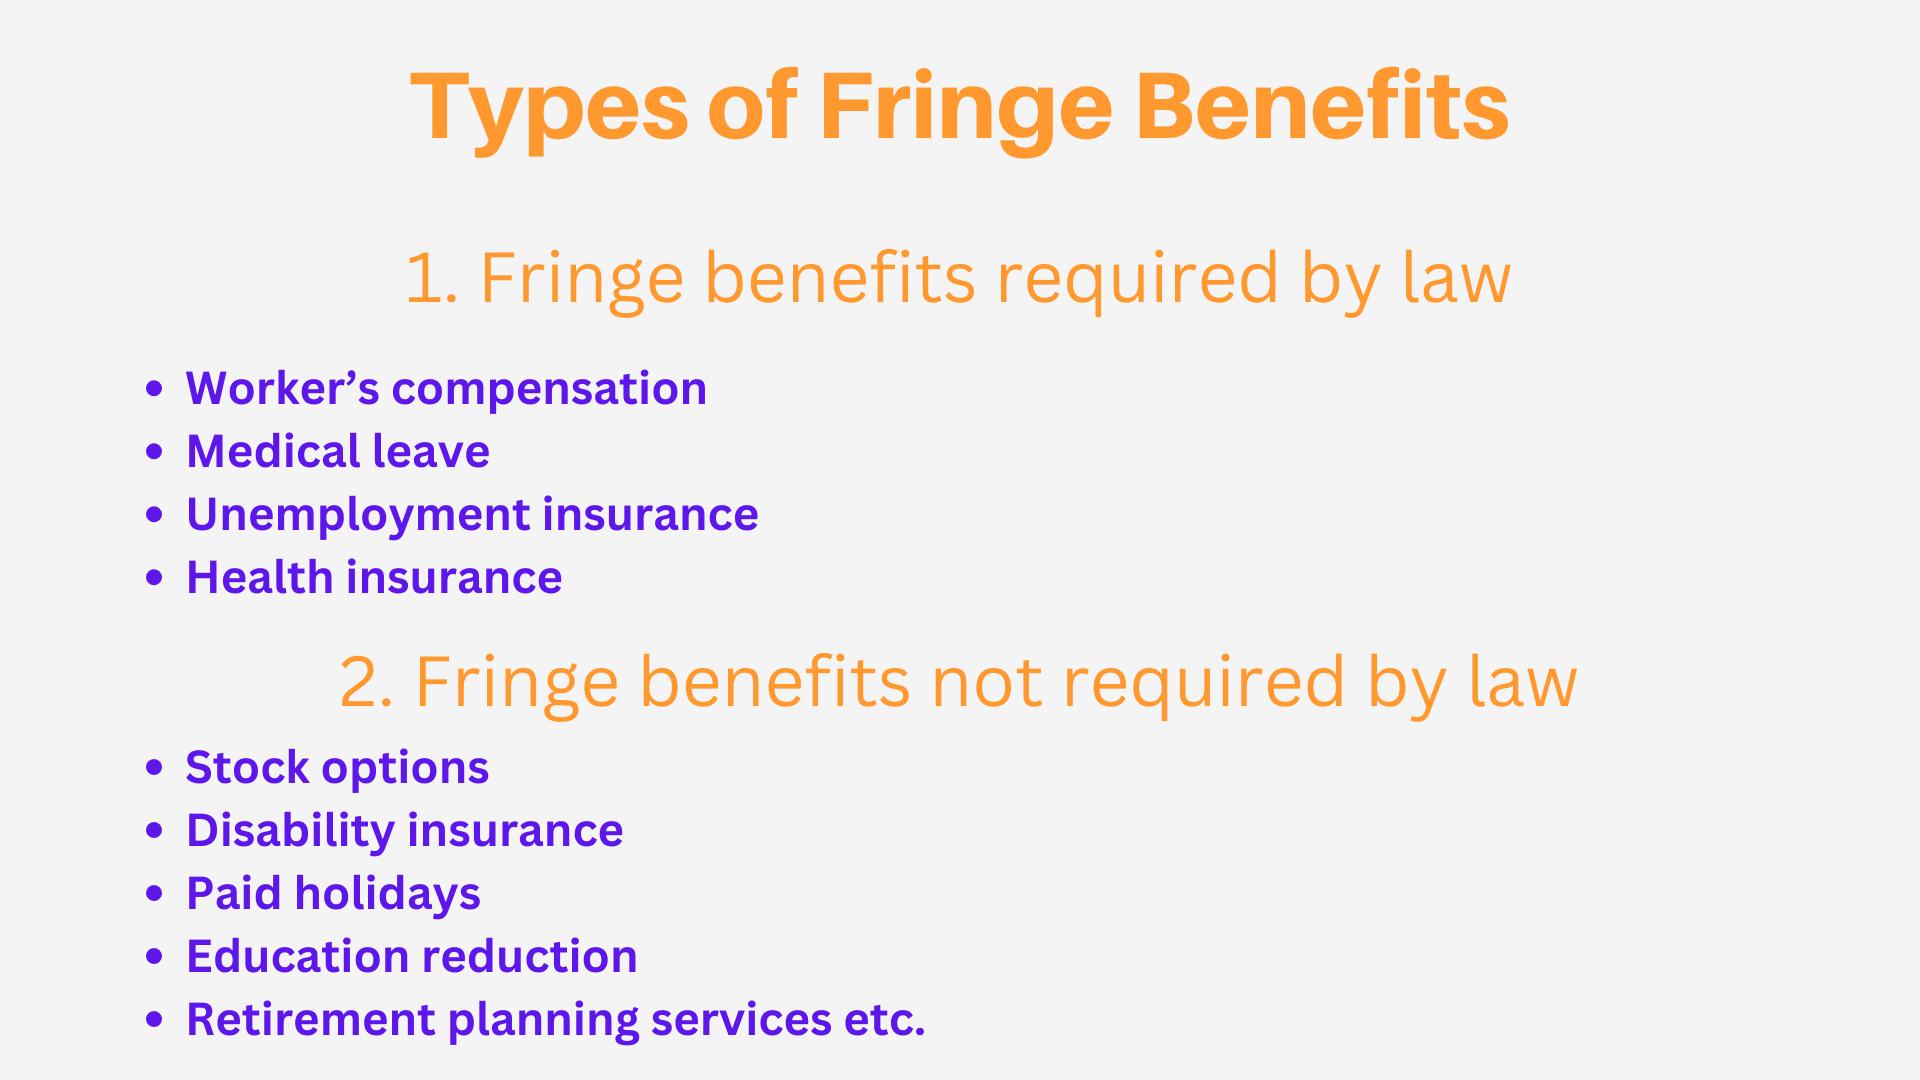 Types of Fringe Benefits